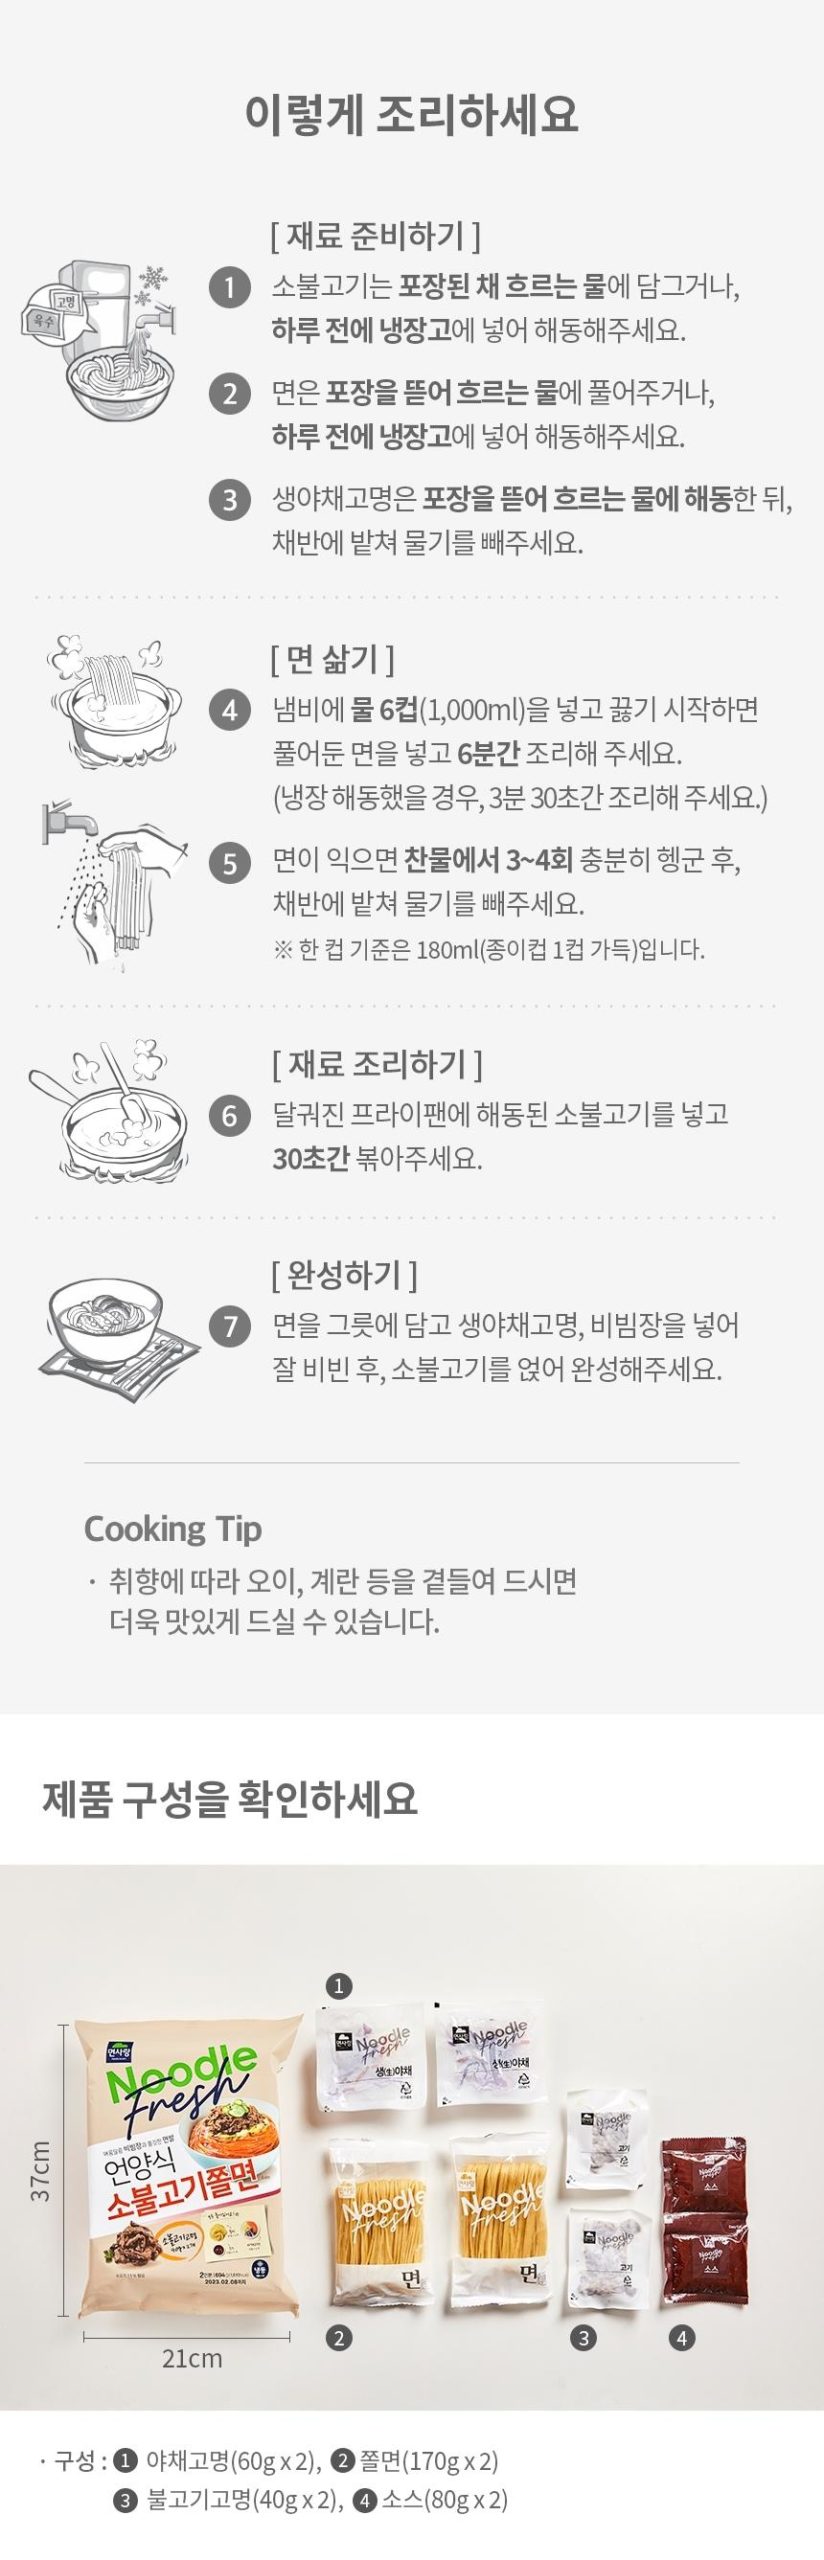 韓國食品-[면사랑] 언양식 소불고기 쫄면 2인분 694g